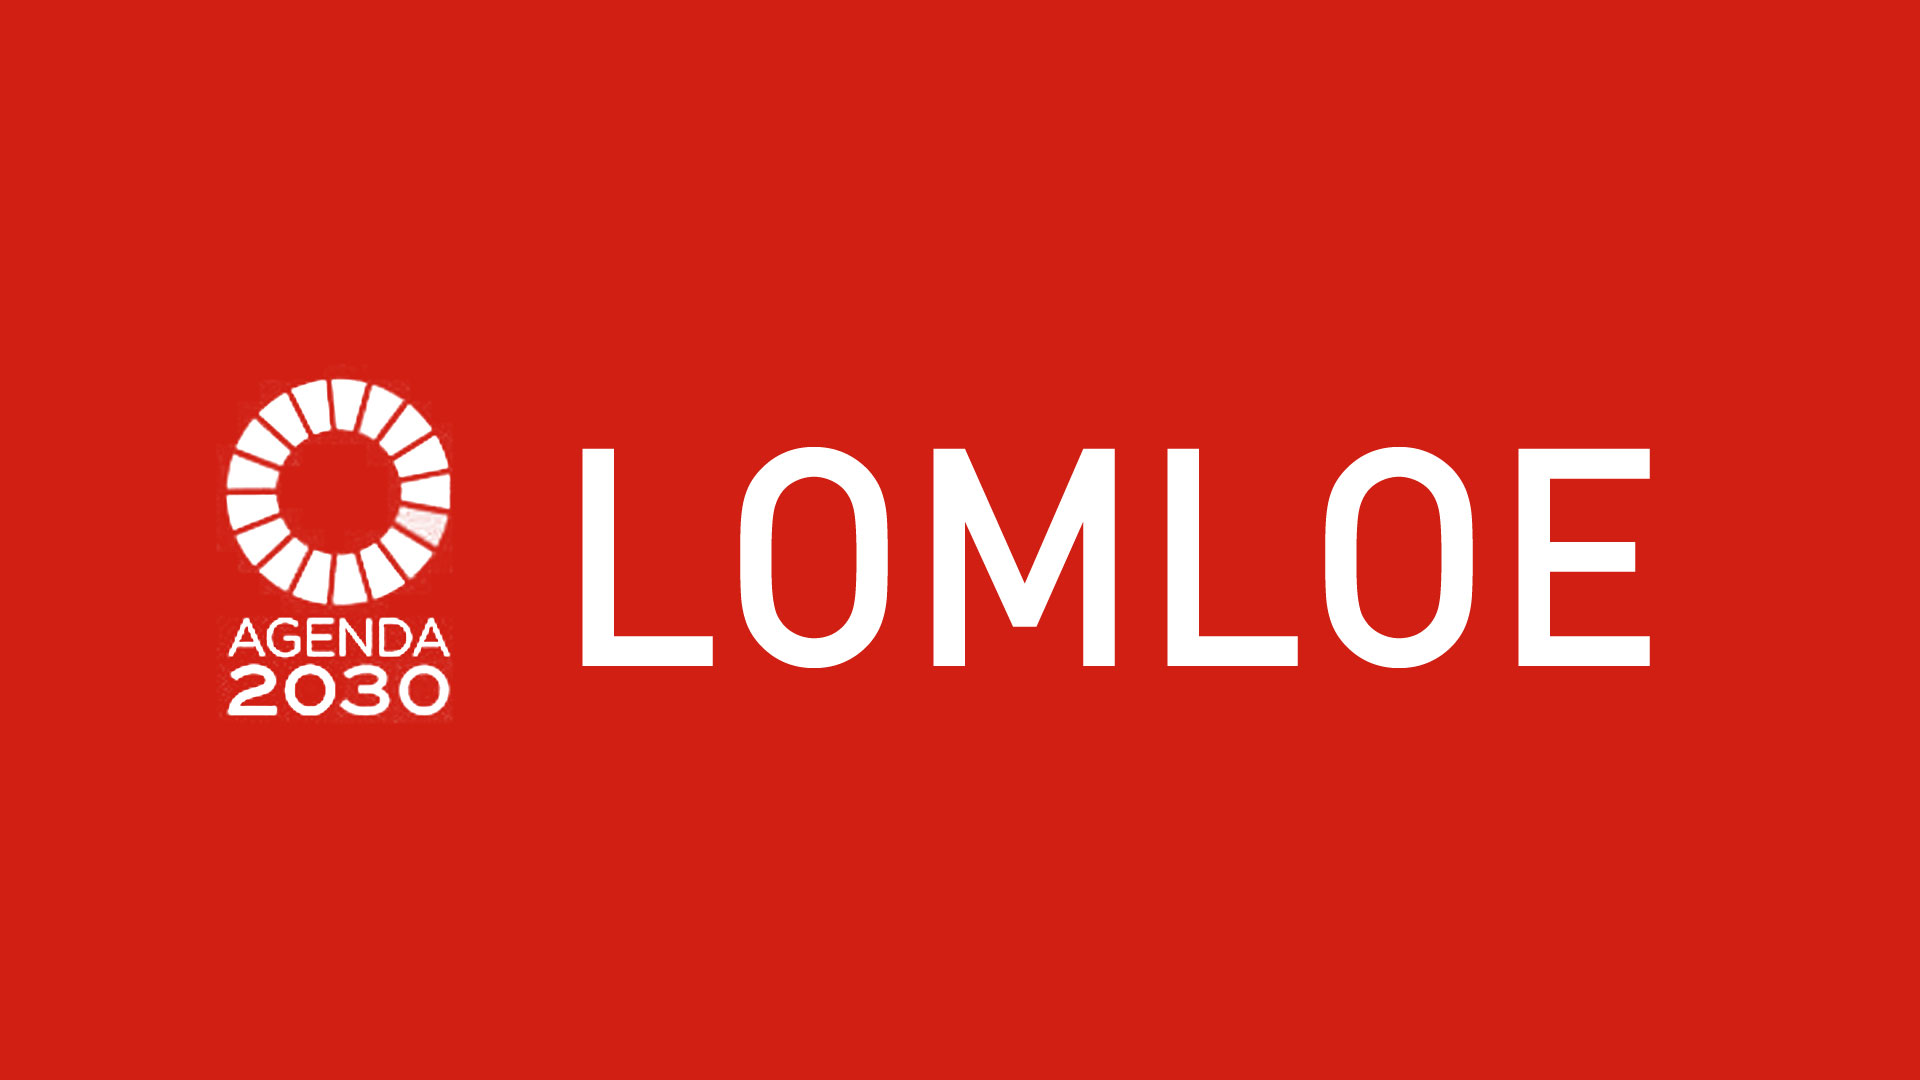 Cenifer lomloe